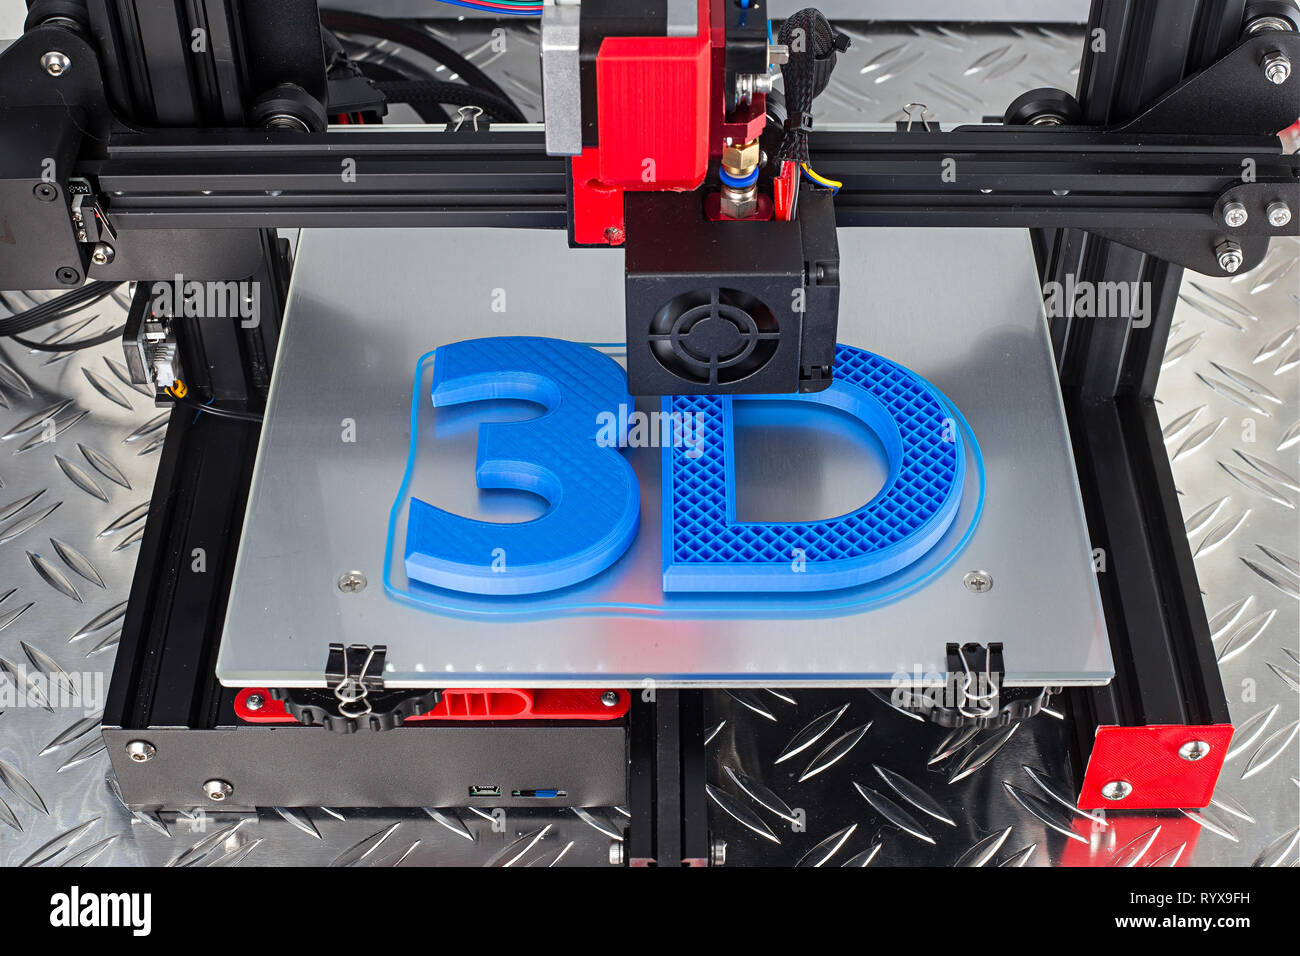 Imprimir Filamento metálico en Impresora 3D 